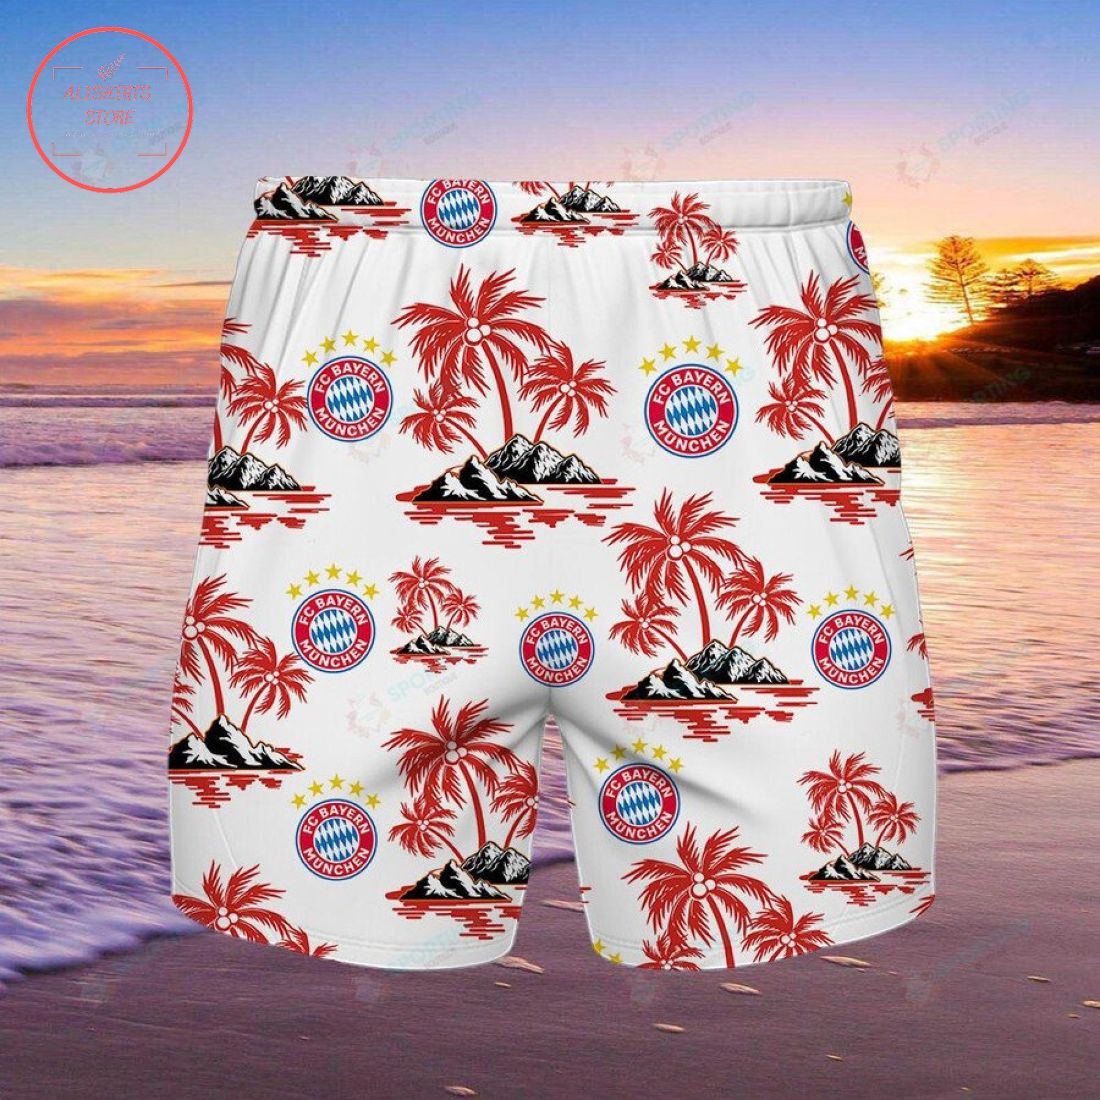 FC Bayern Munchen Hawaiian Shirt and Shorts